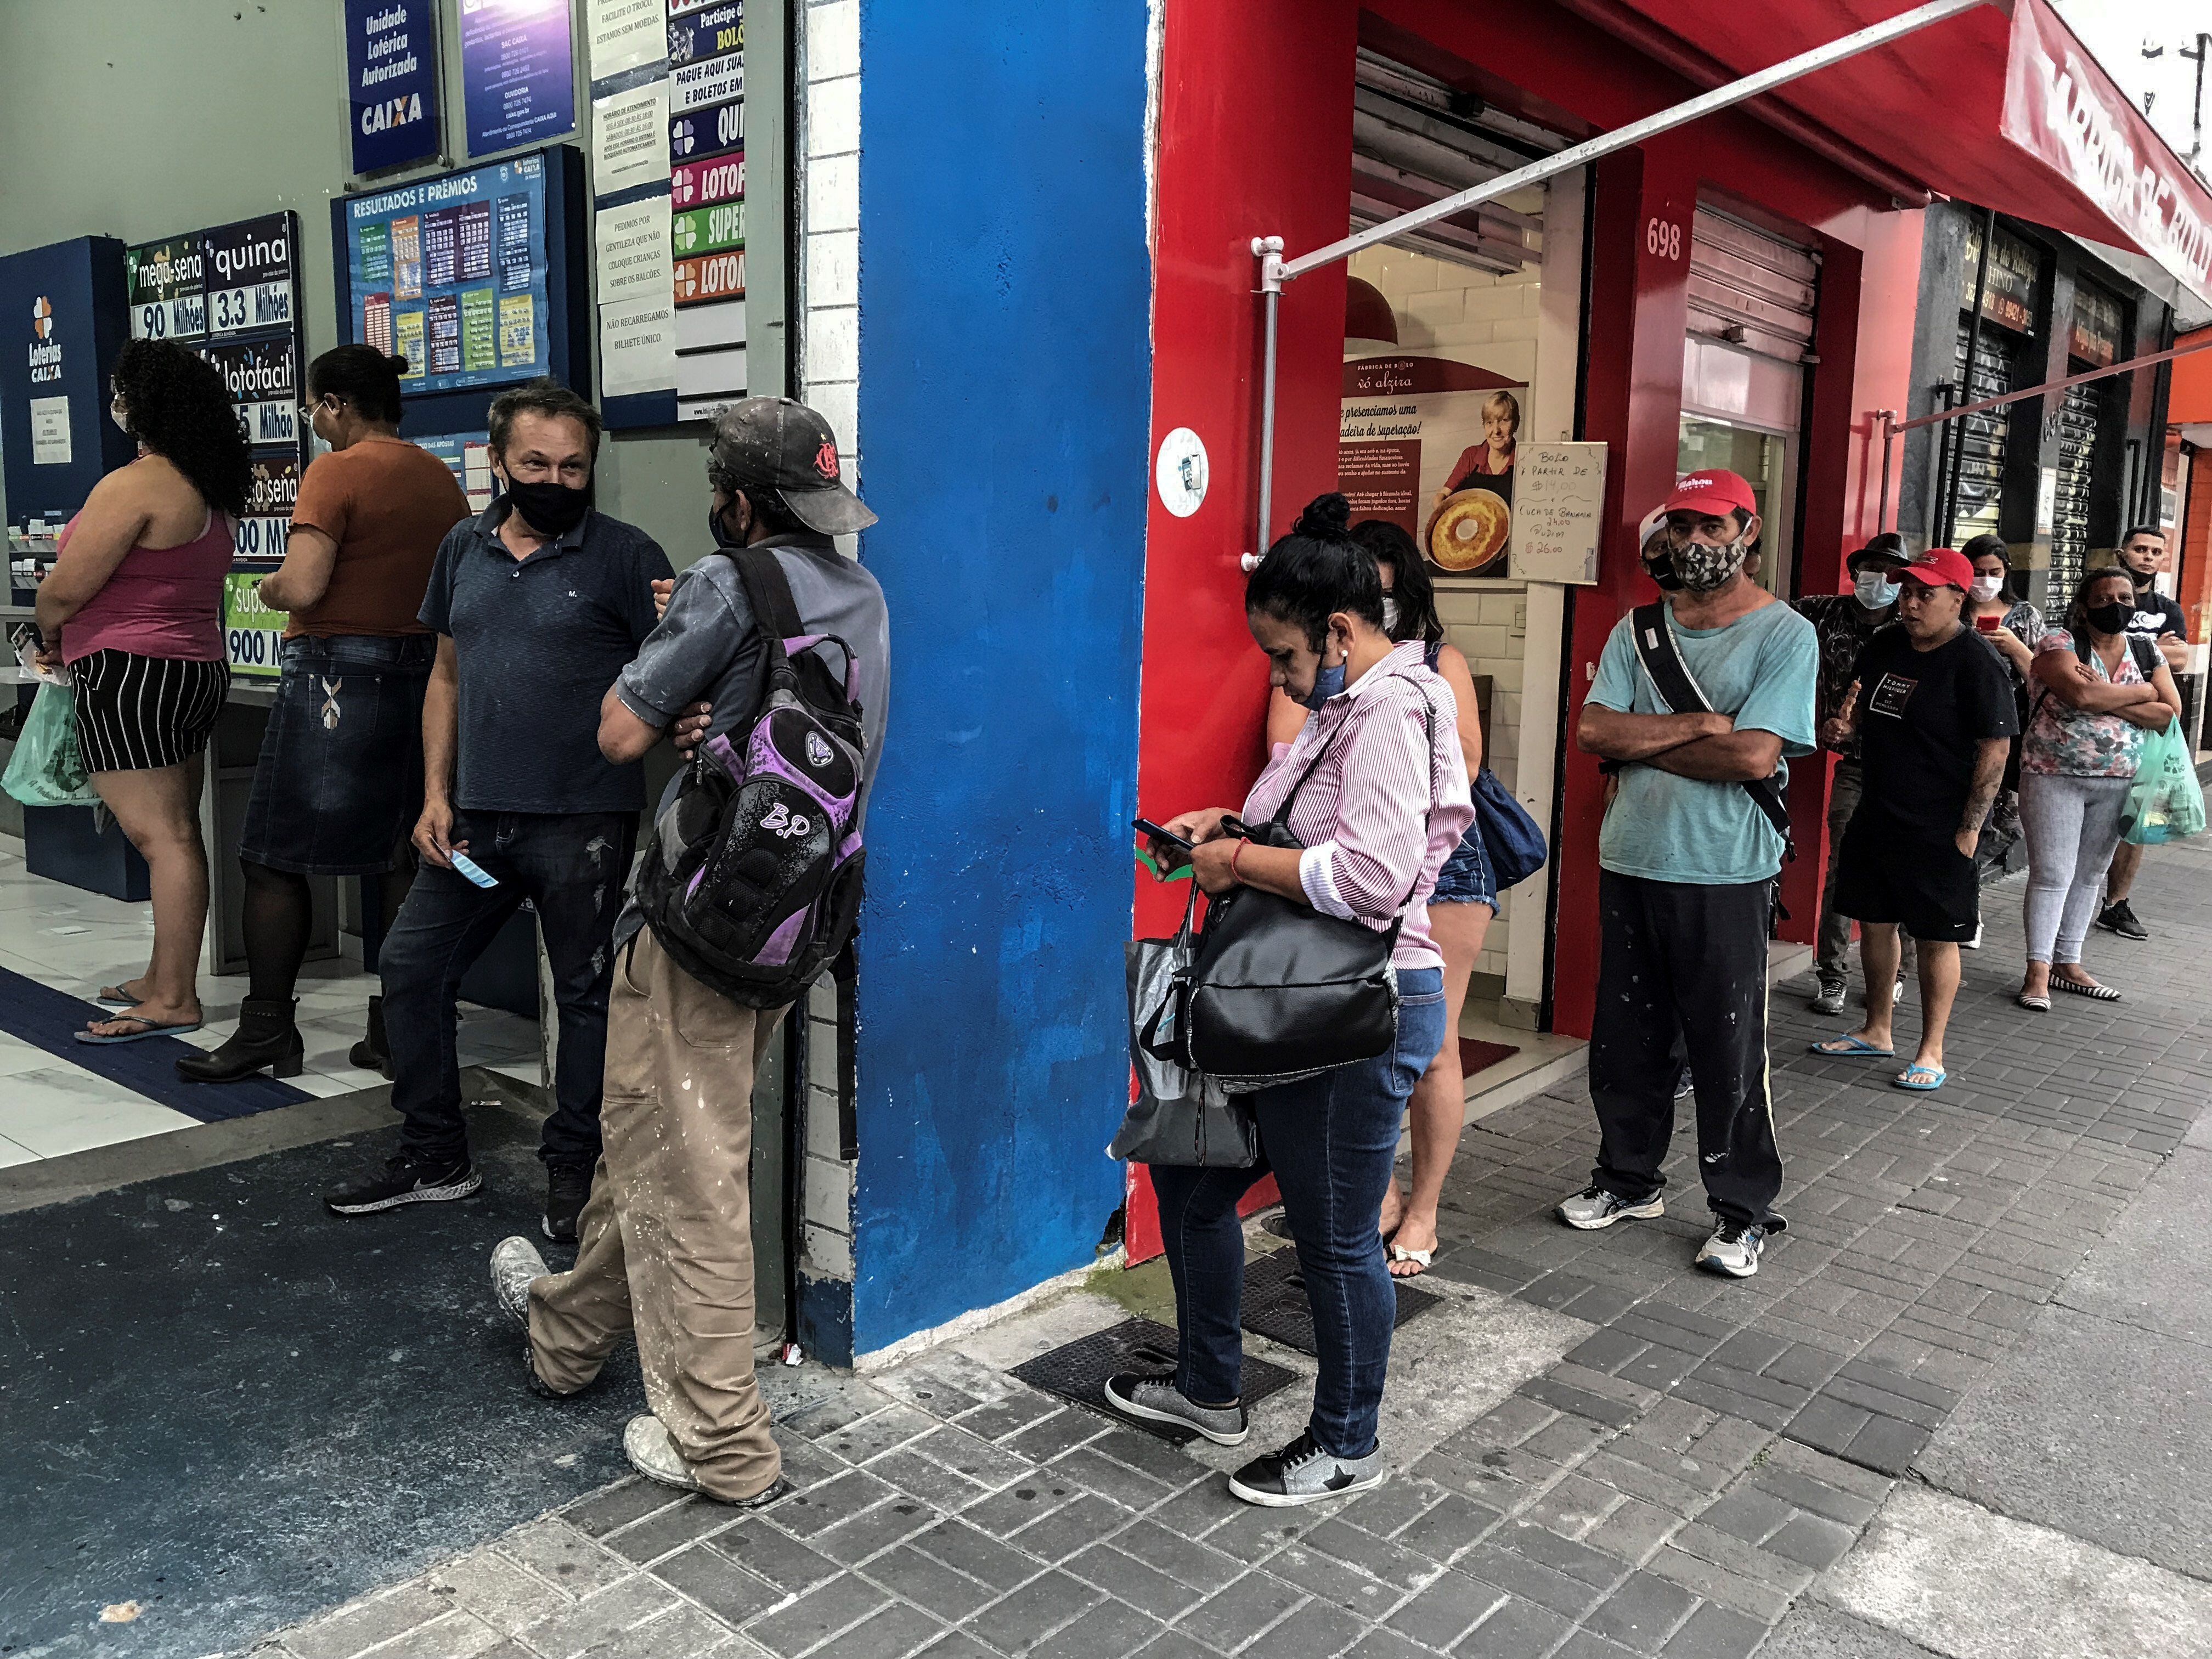 Varias personas esperan para ingresar a un establecimiento, en una ciudad en Brasil, en una fotografía de archivo.EFE/ Sebastiao Moreira